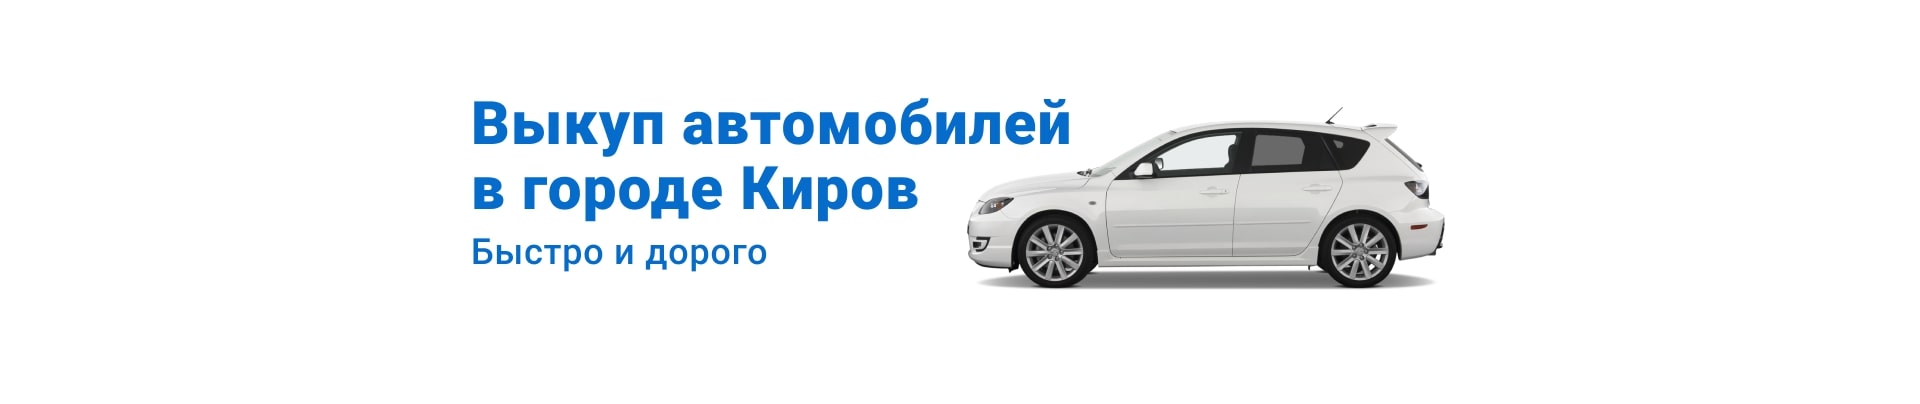 Выкуп автомобилей в городе Кирове